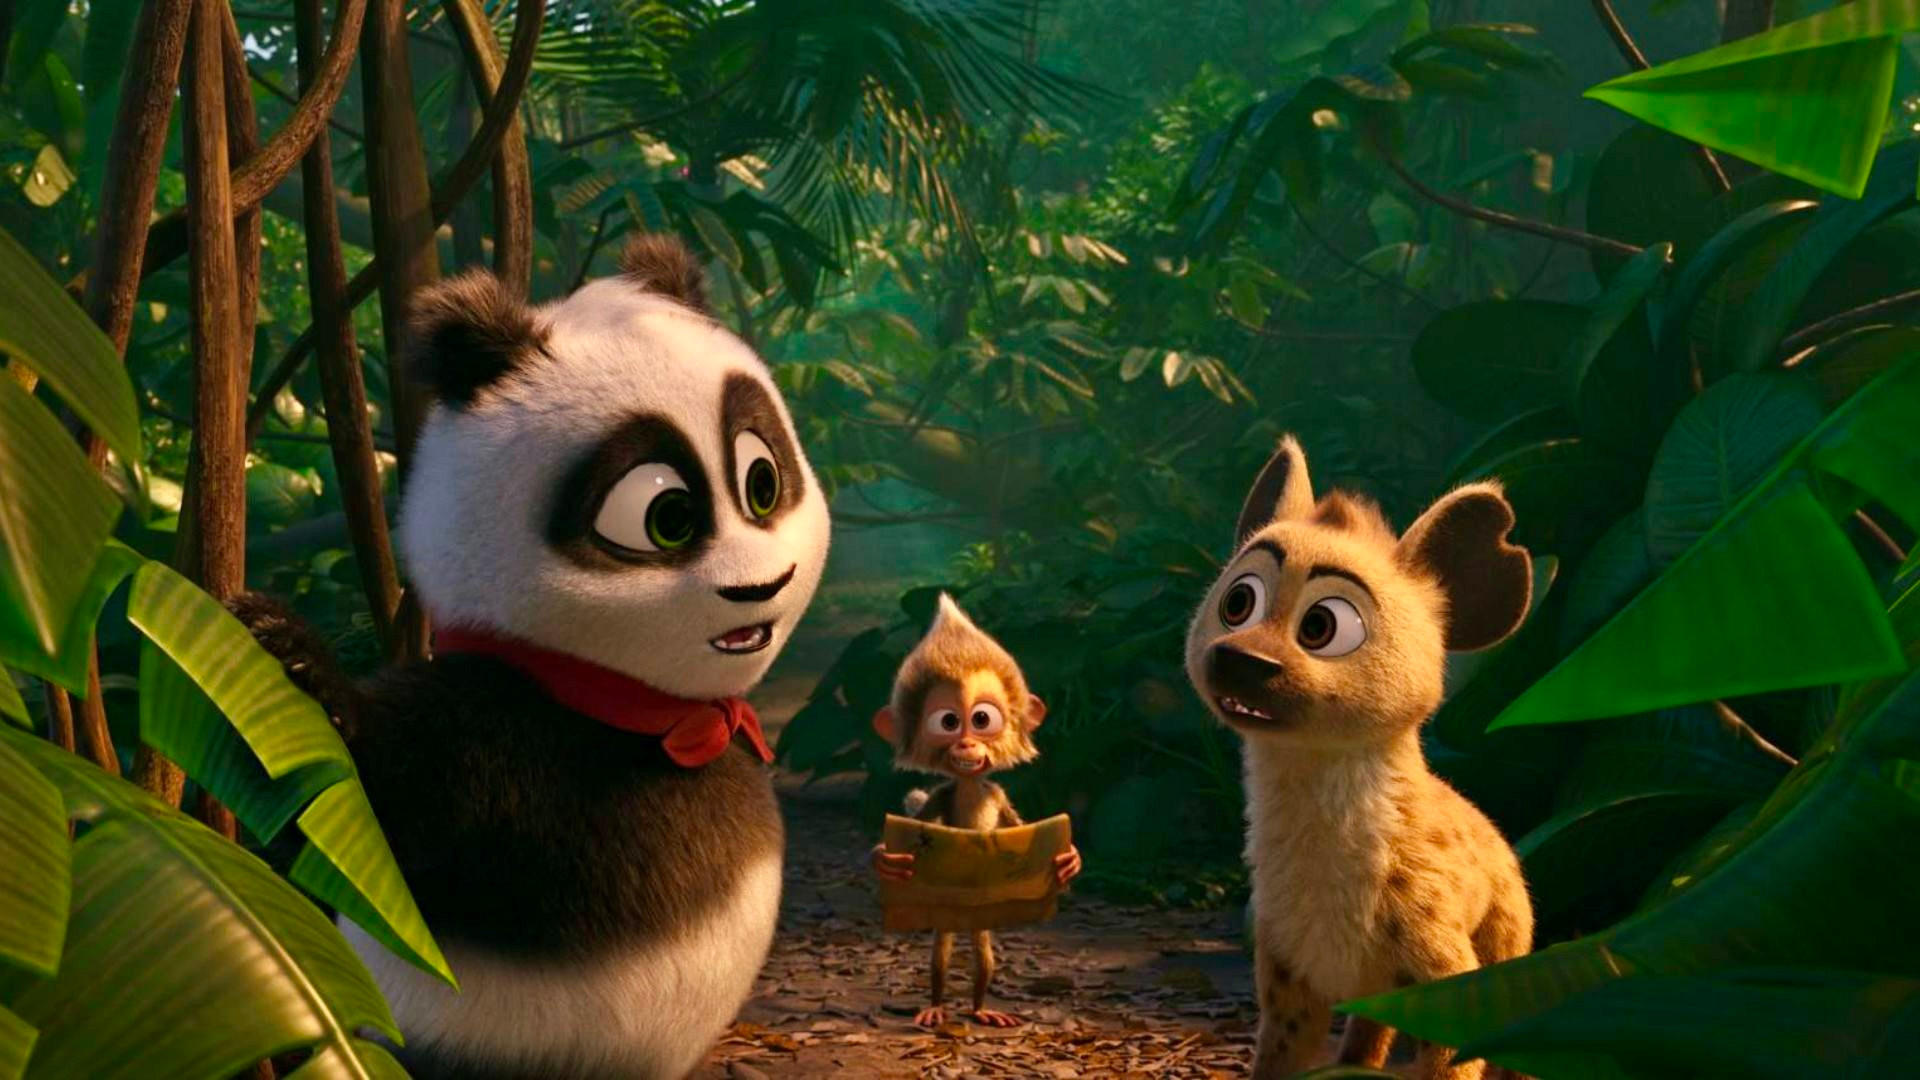 Panda Đại Náo Lãnh Địa Vua Sư Tử: Phim Hoạt Hình Vui Nhộn Dành Cho Cả Gia Đình Trong Dịp Lễ 30/4 - Ra Rạp Xem Gì